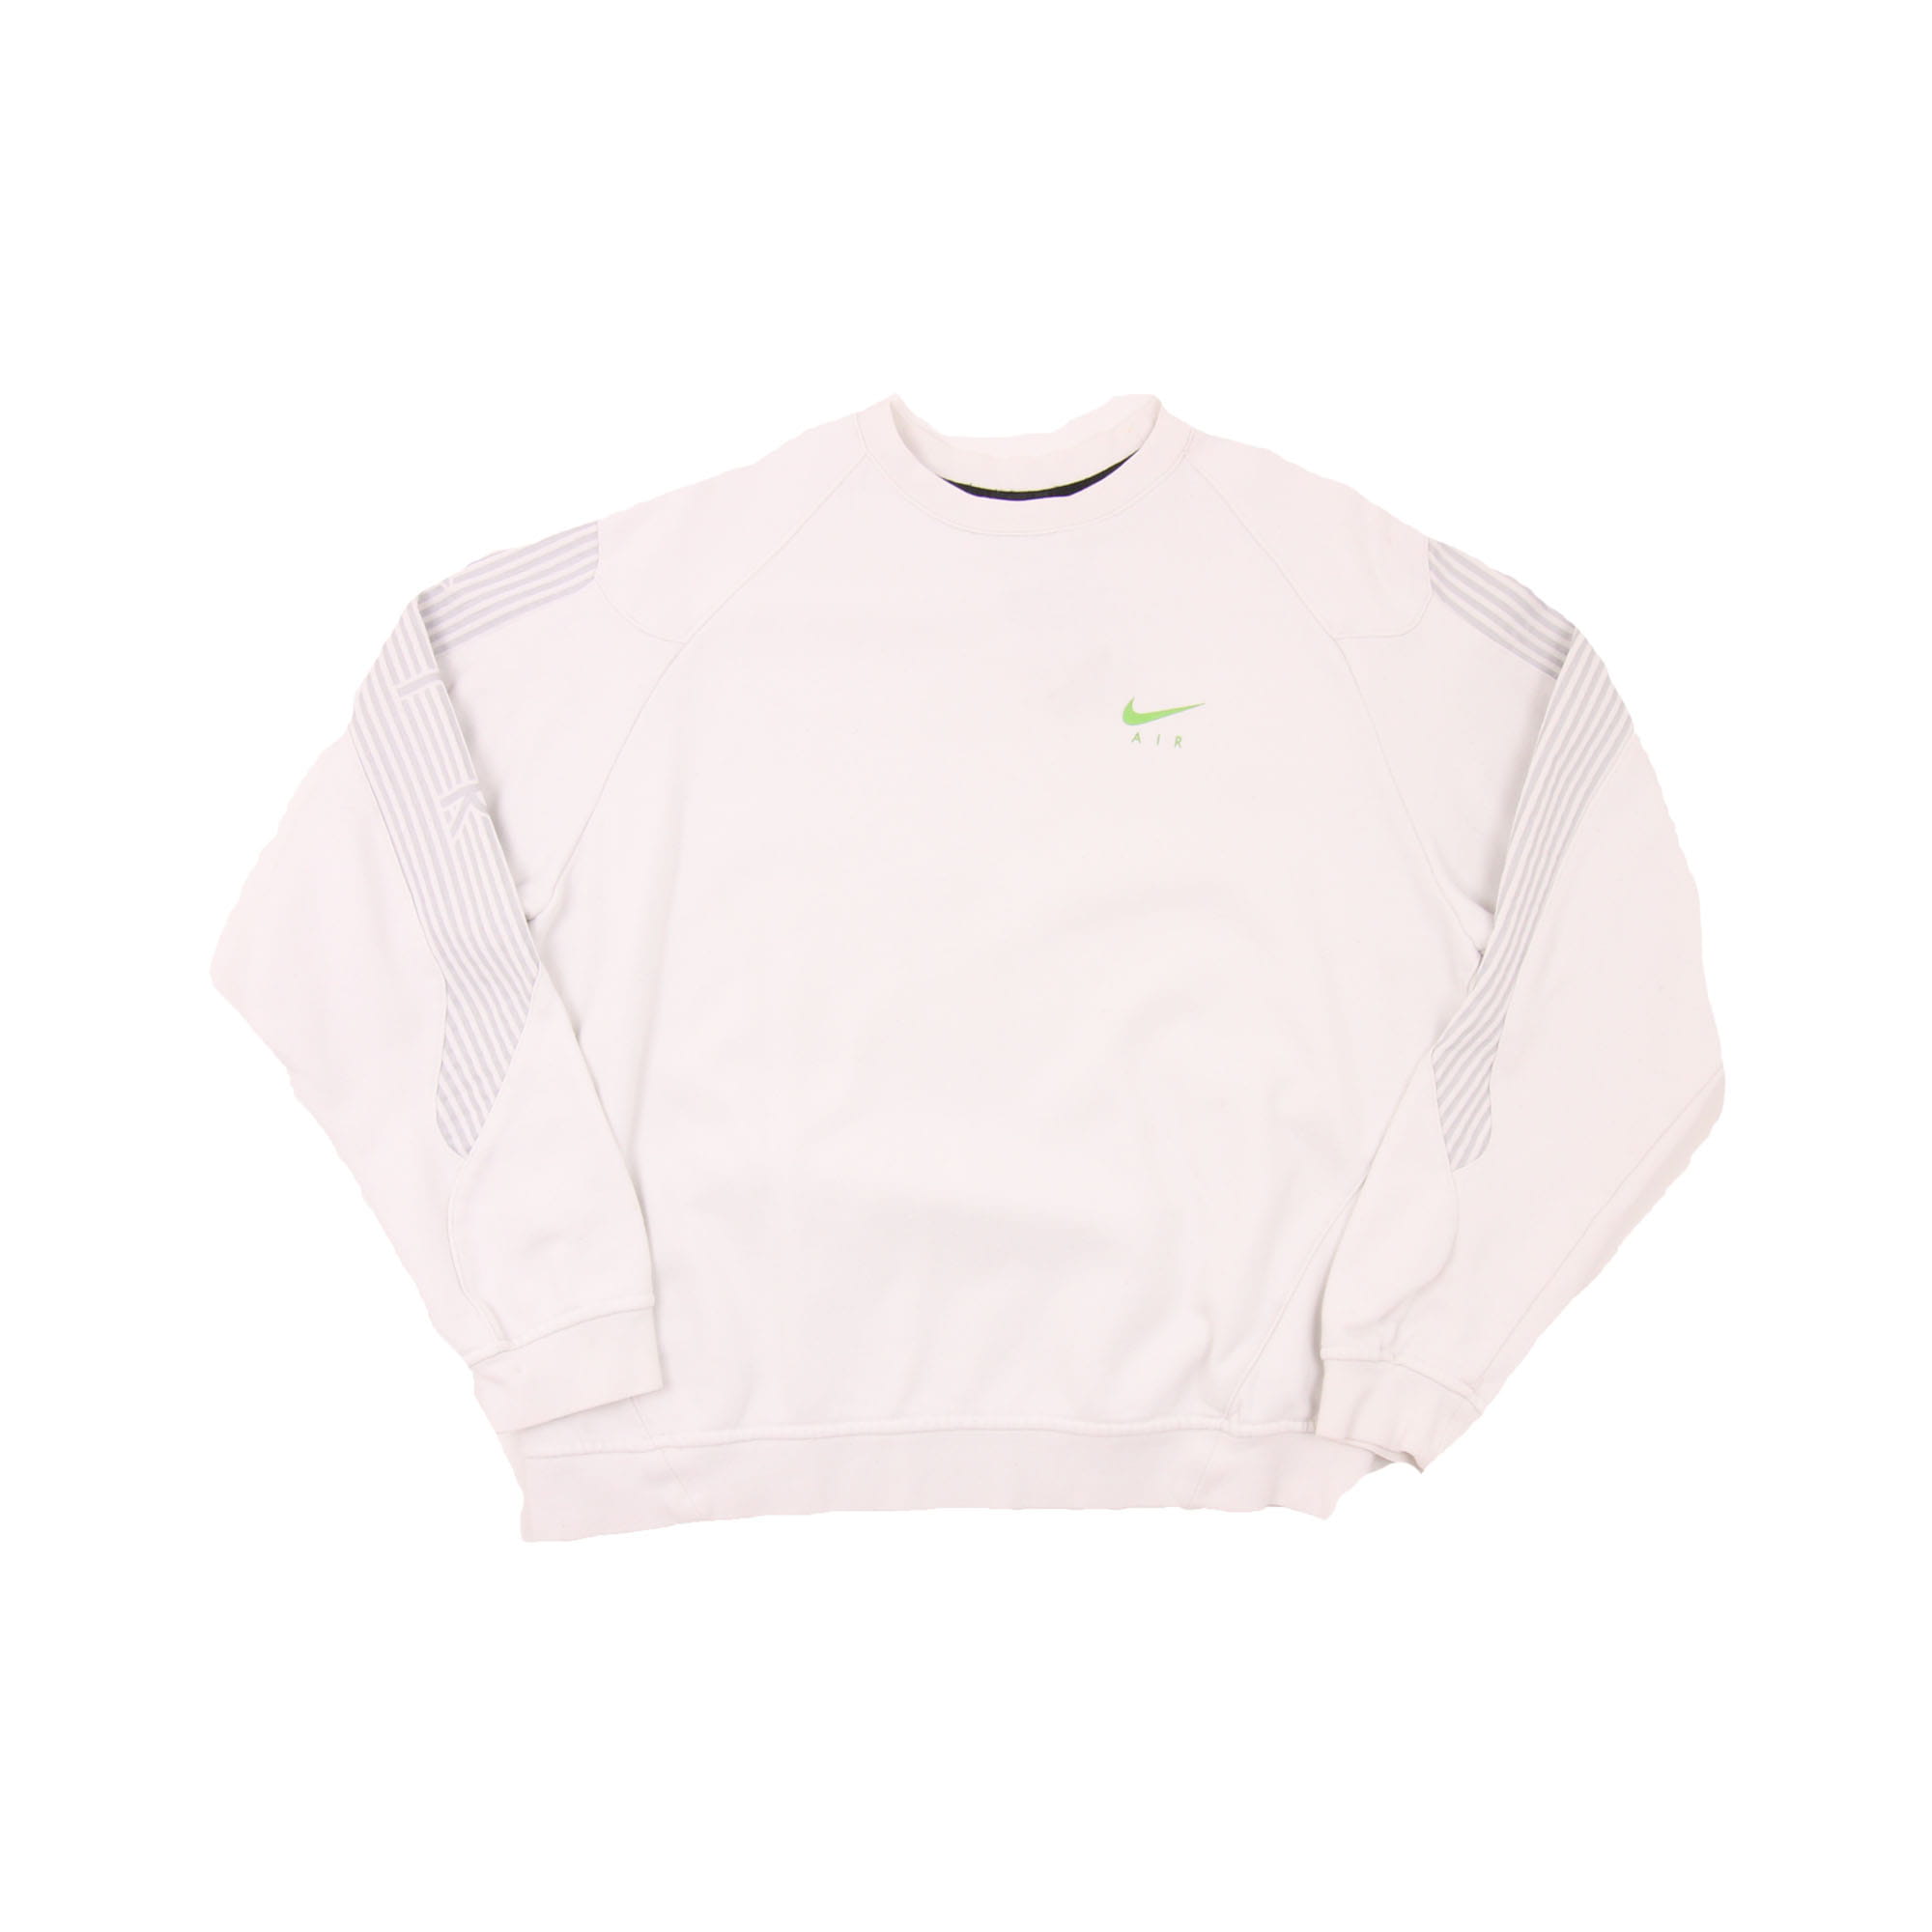 Nike Air Sweatshirt White -  M/L